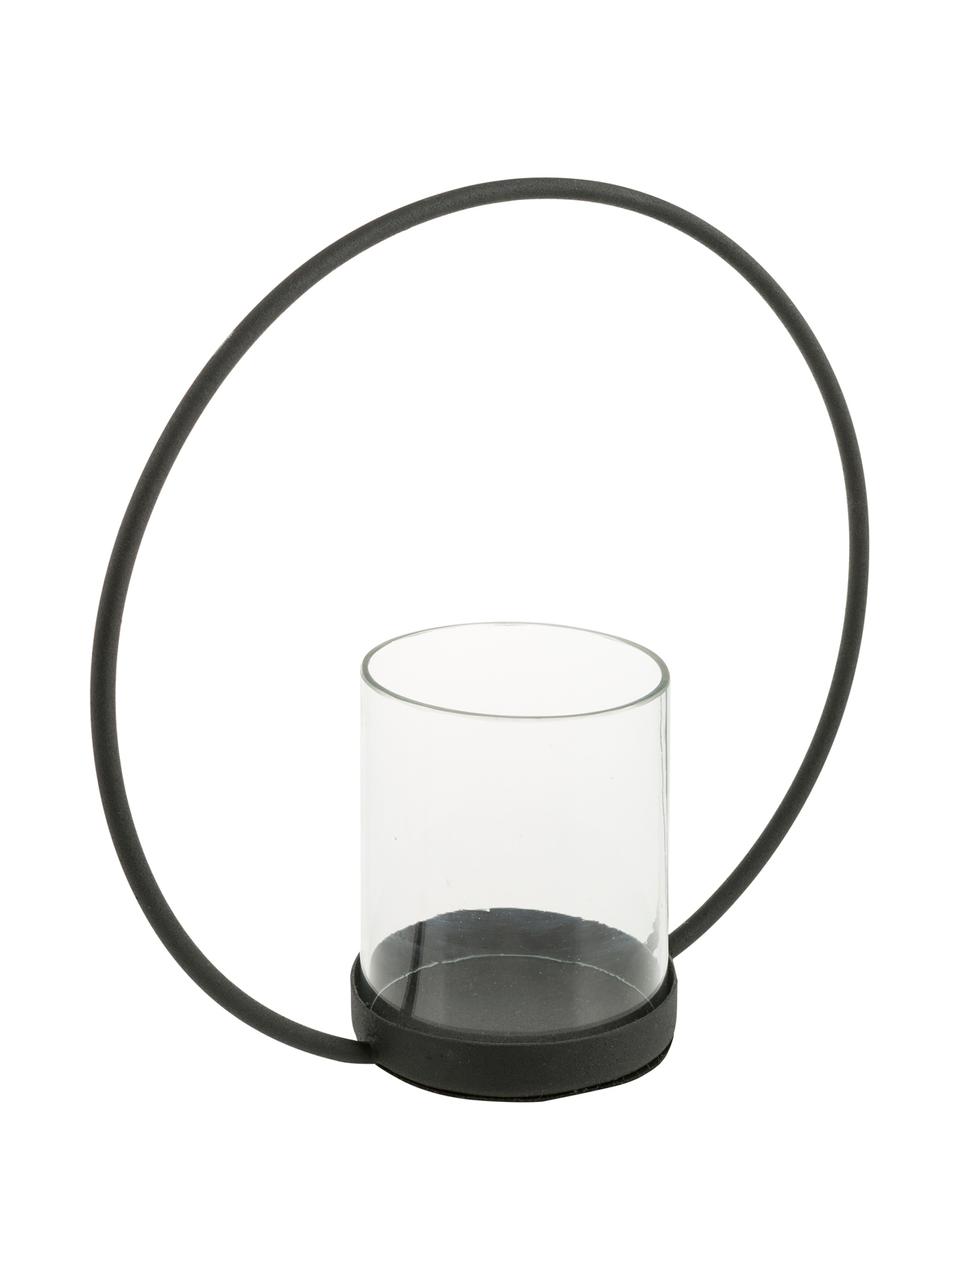 Windlicht Sander, Houder: gelakt edelstaal, Windlicht: glas, Zwart, transparant, 25 x 25 cm